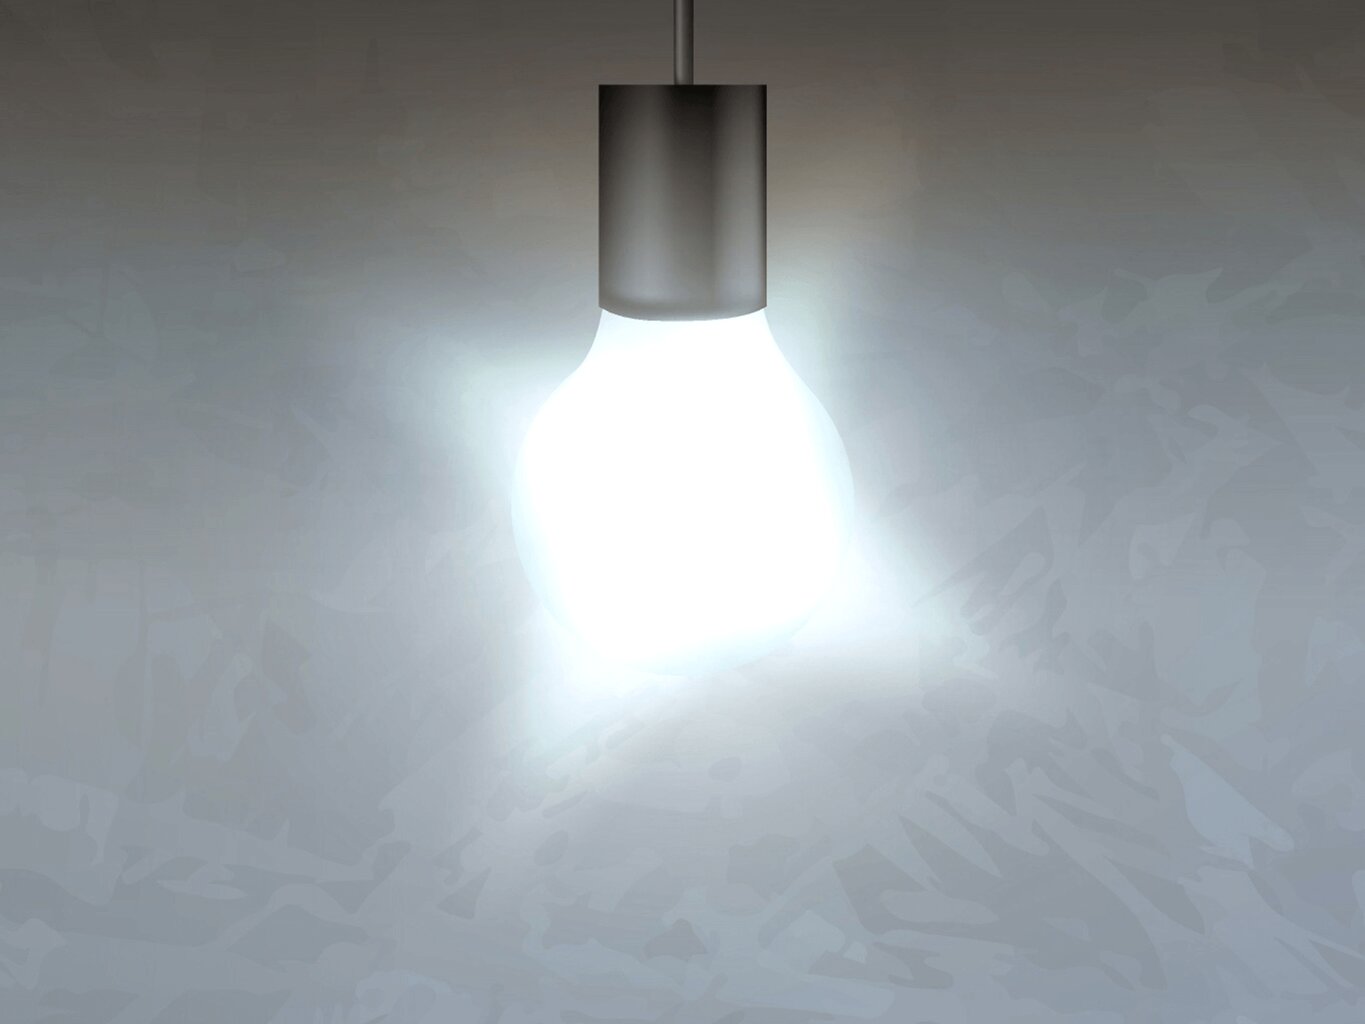 LED liuminescencinis vamzdis T8 - 24W - 150cm - maitinimas iš vienos pusės - šaltai baltas (6000K) kaina ir informacija | Elektros lemputės | pigu.lt